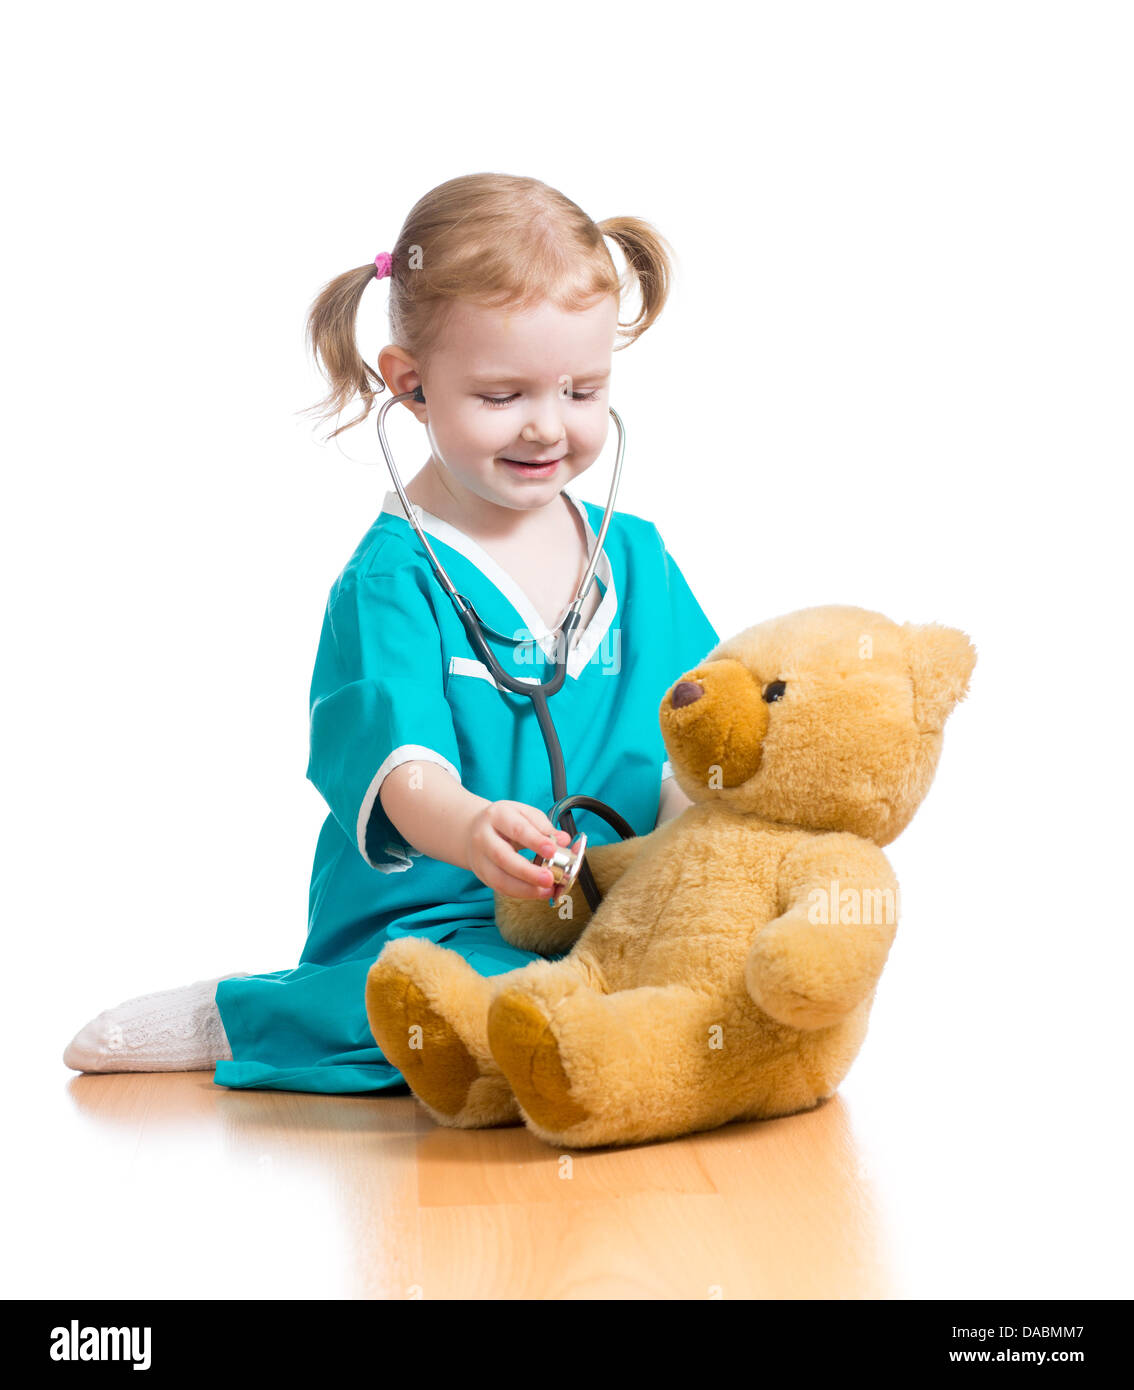 Bambino ragazza con vestiti di dottore giocare con il giocattolo di peluche Foto Stock